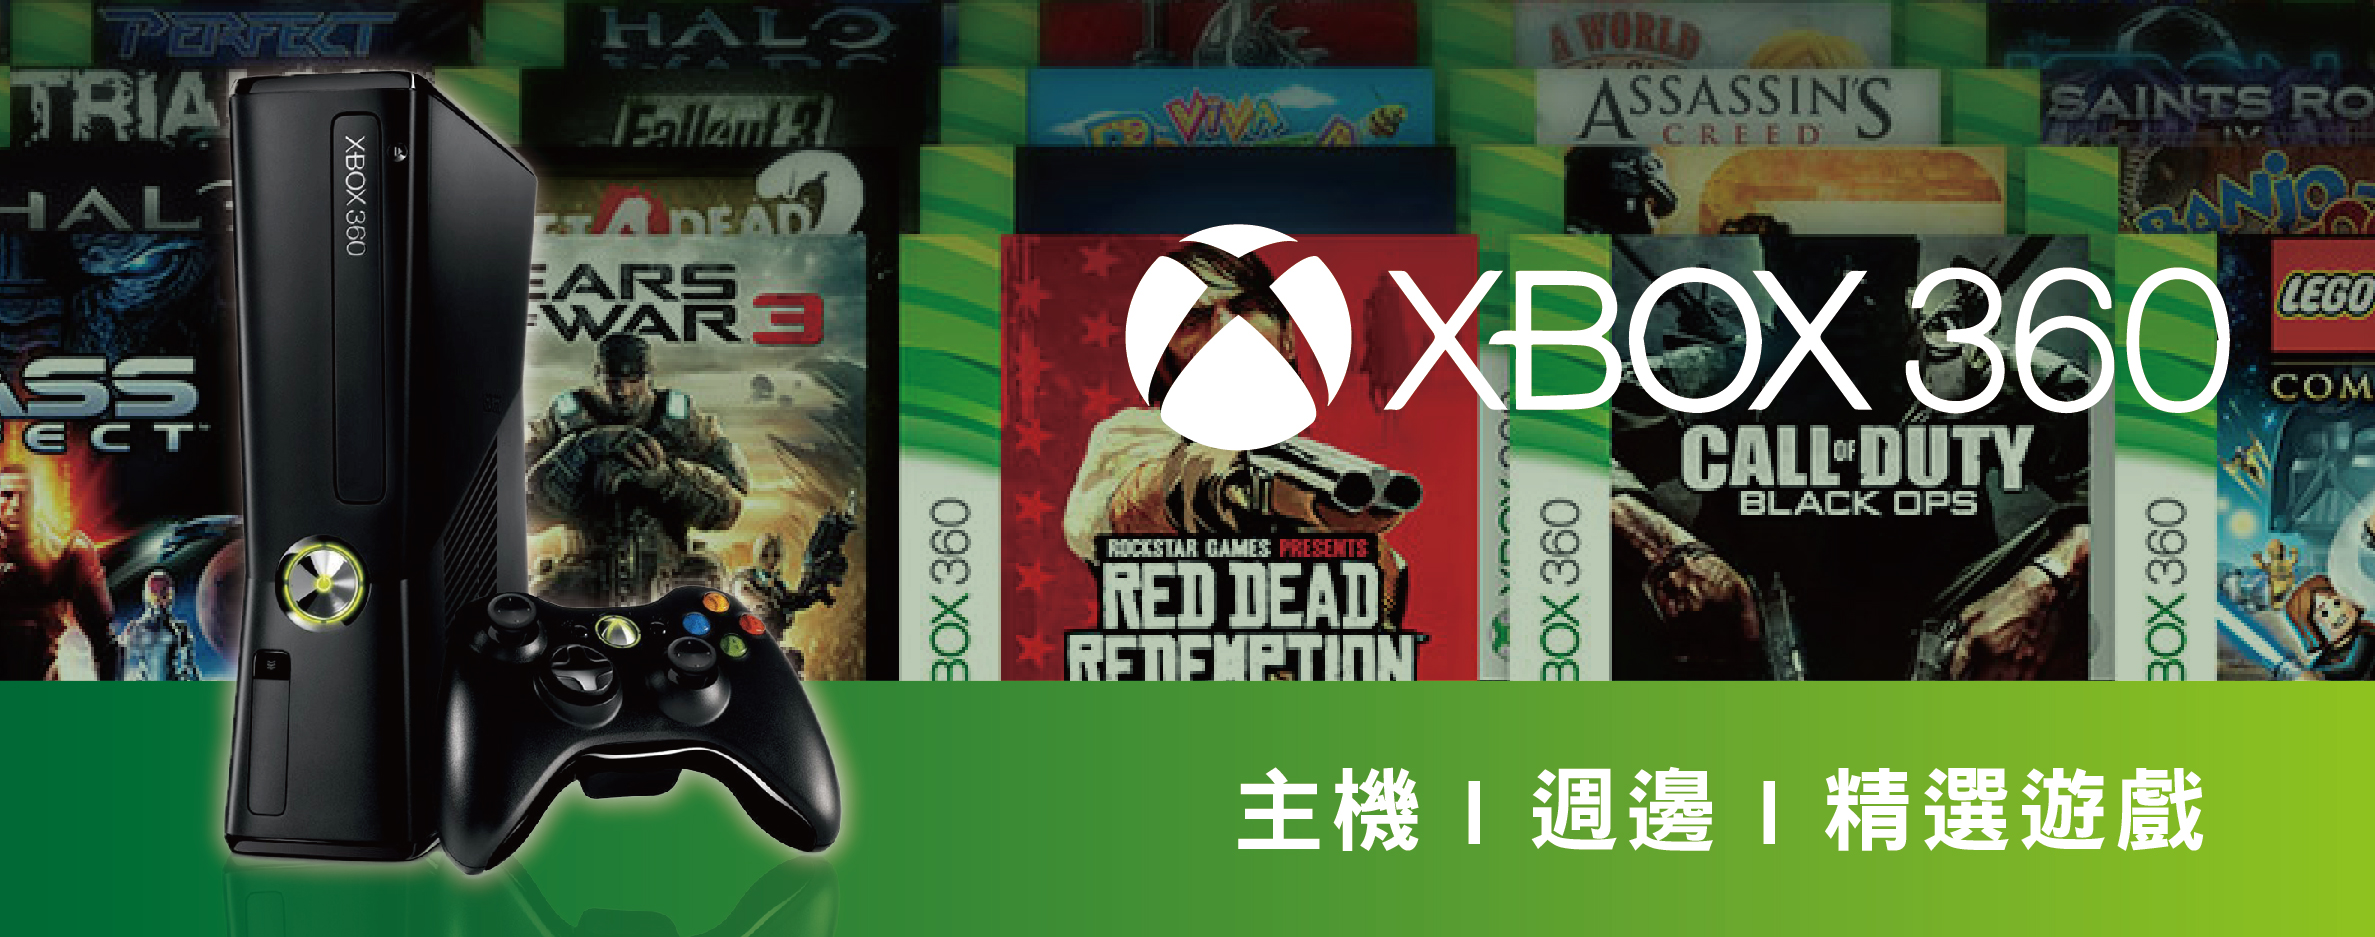 XBOX360 週邊 - 茶米電玩品牌名店